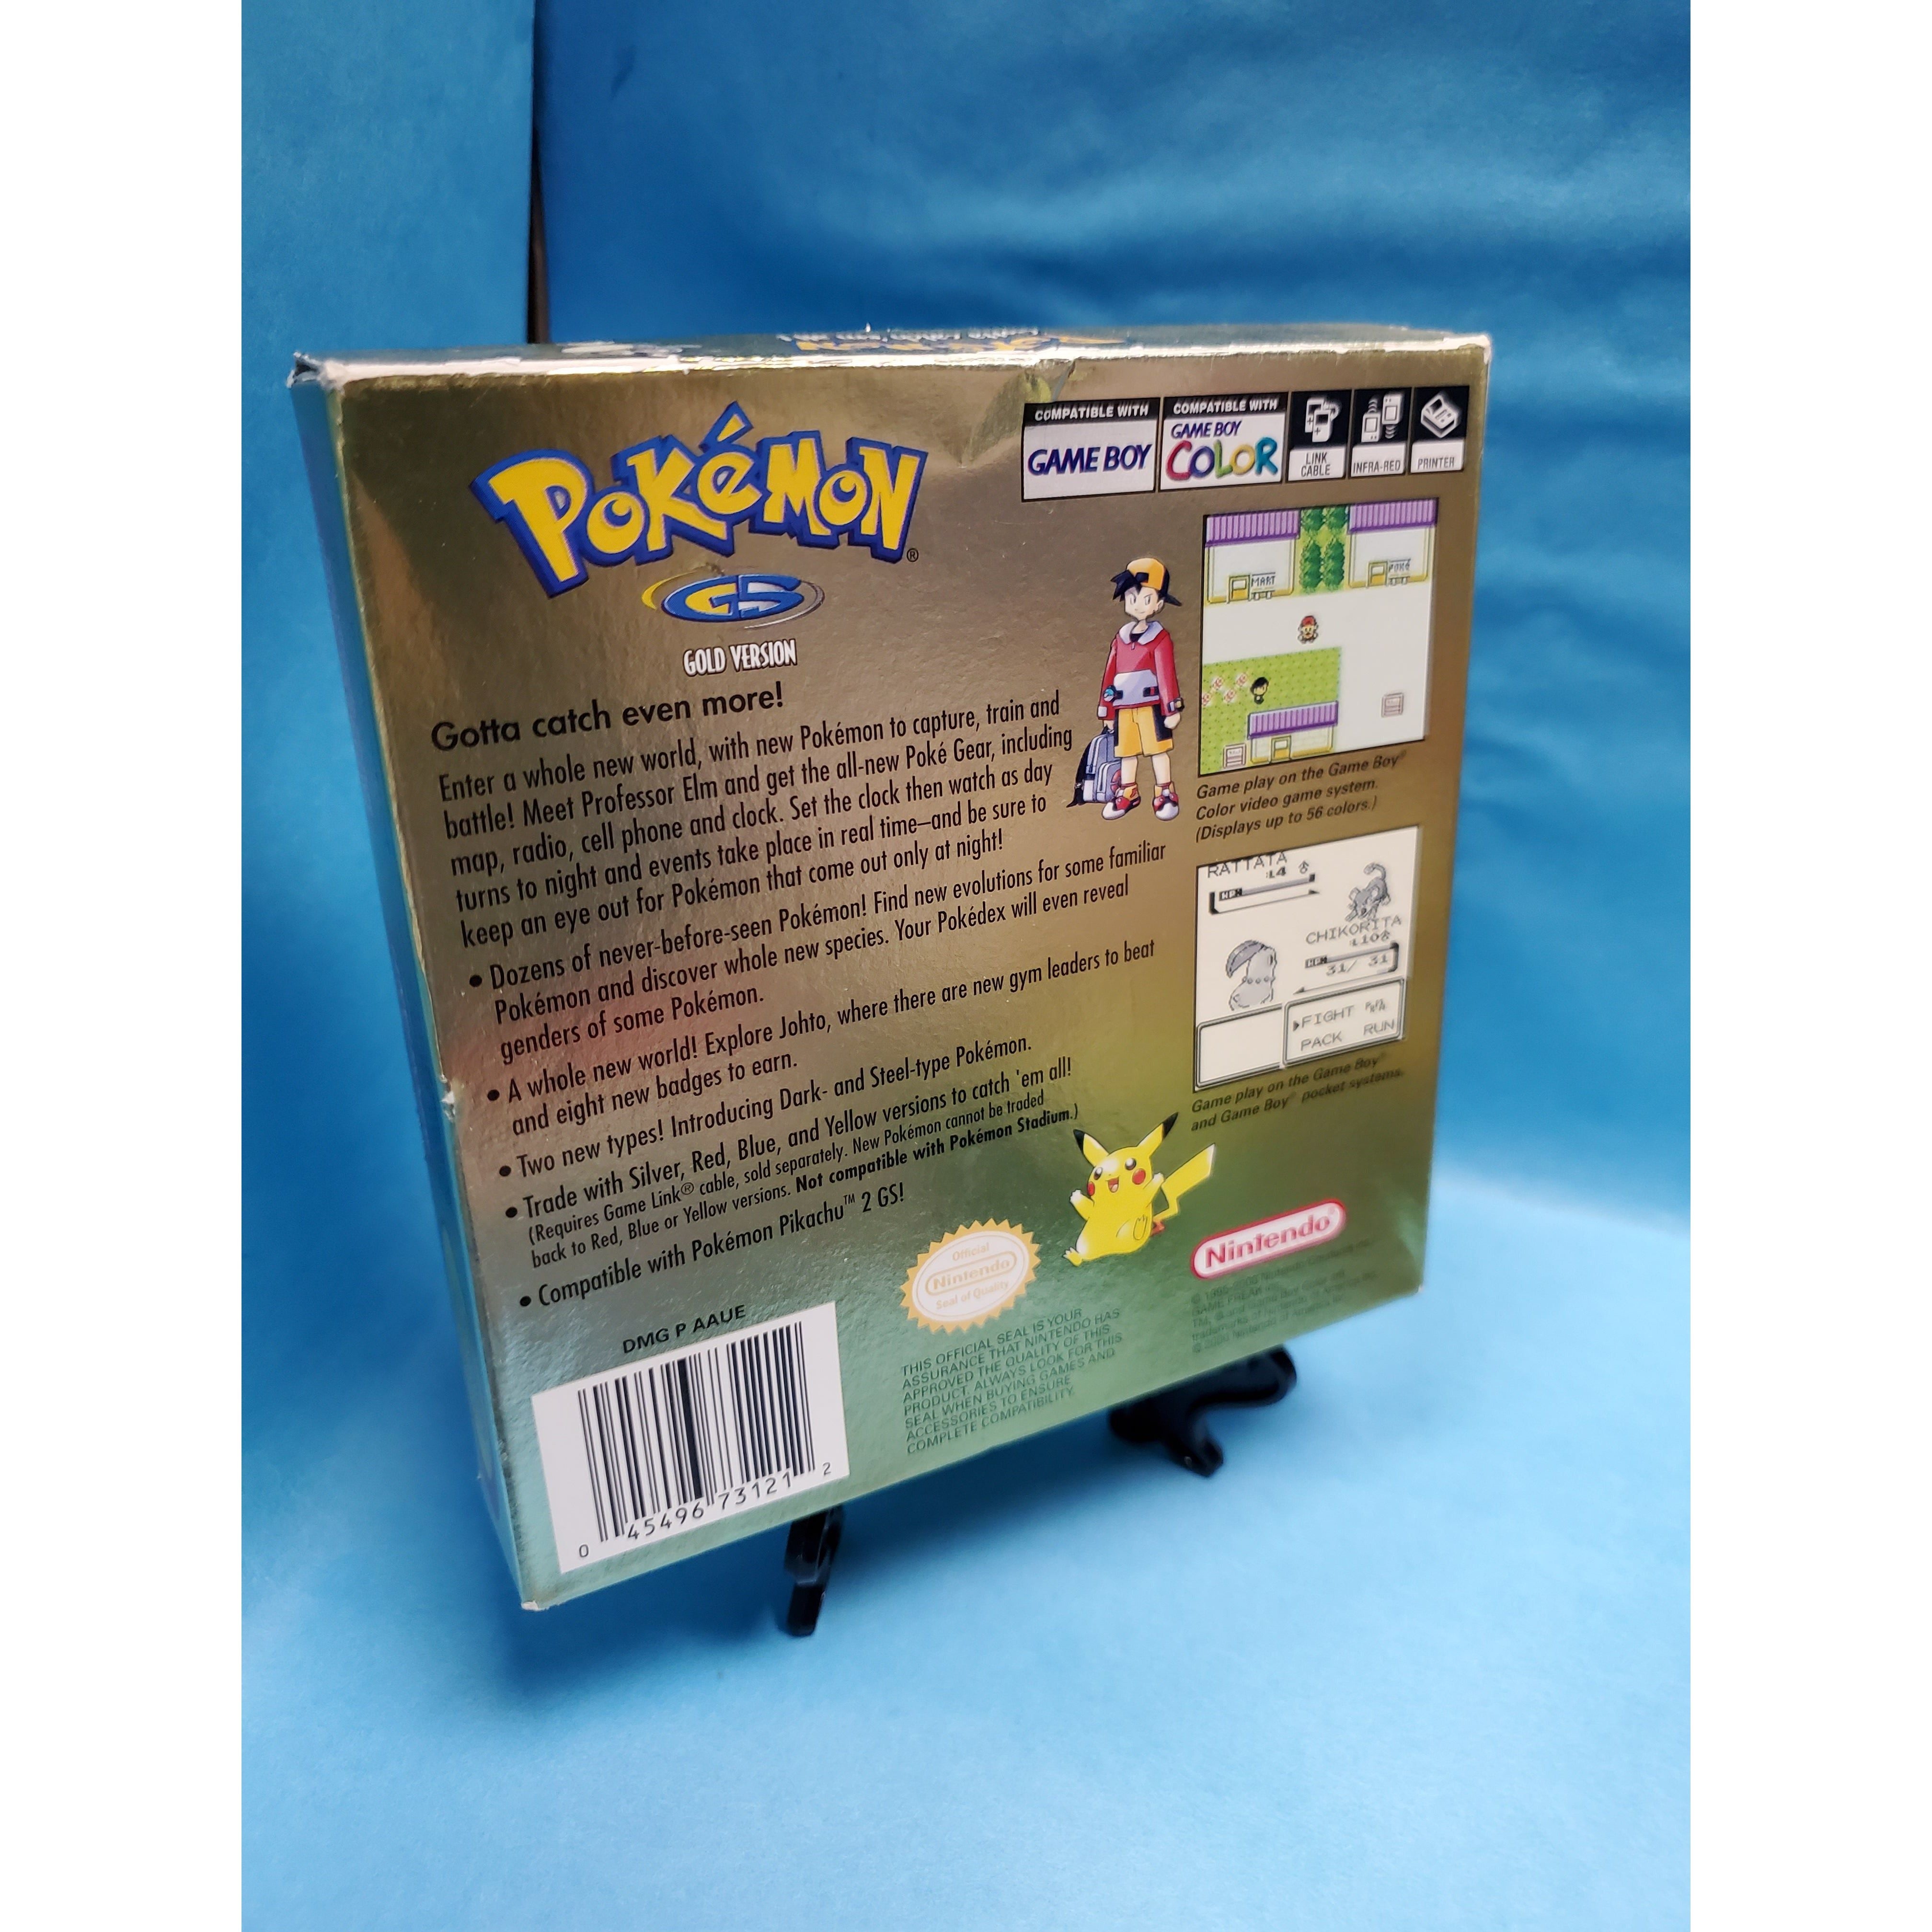 GBC - Pokemon Gold (Complete in Box)